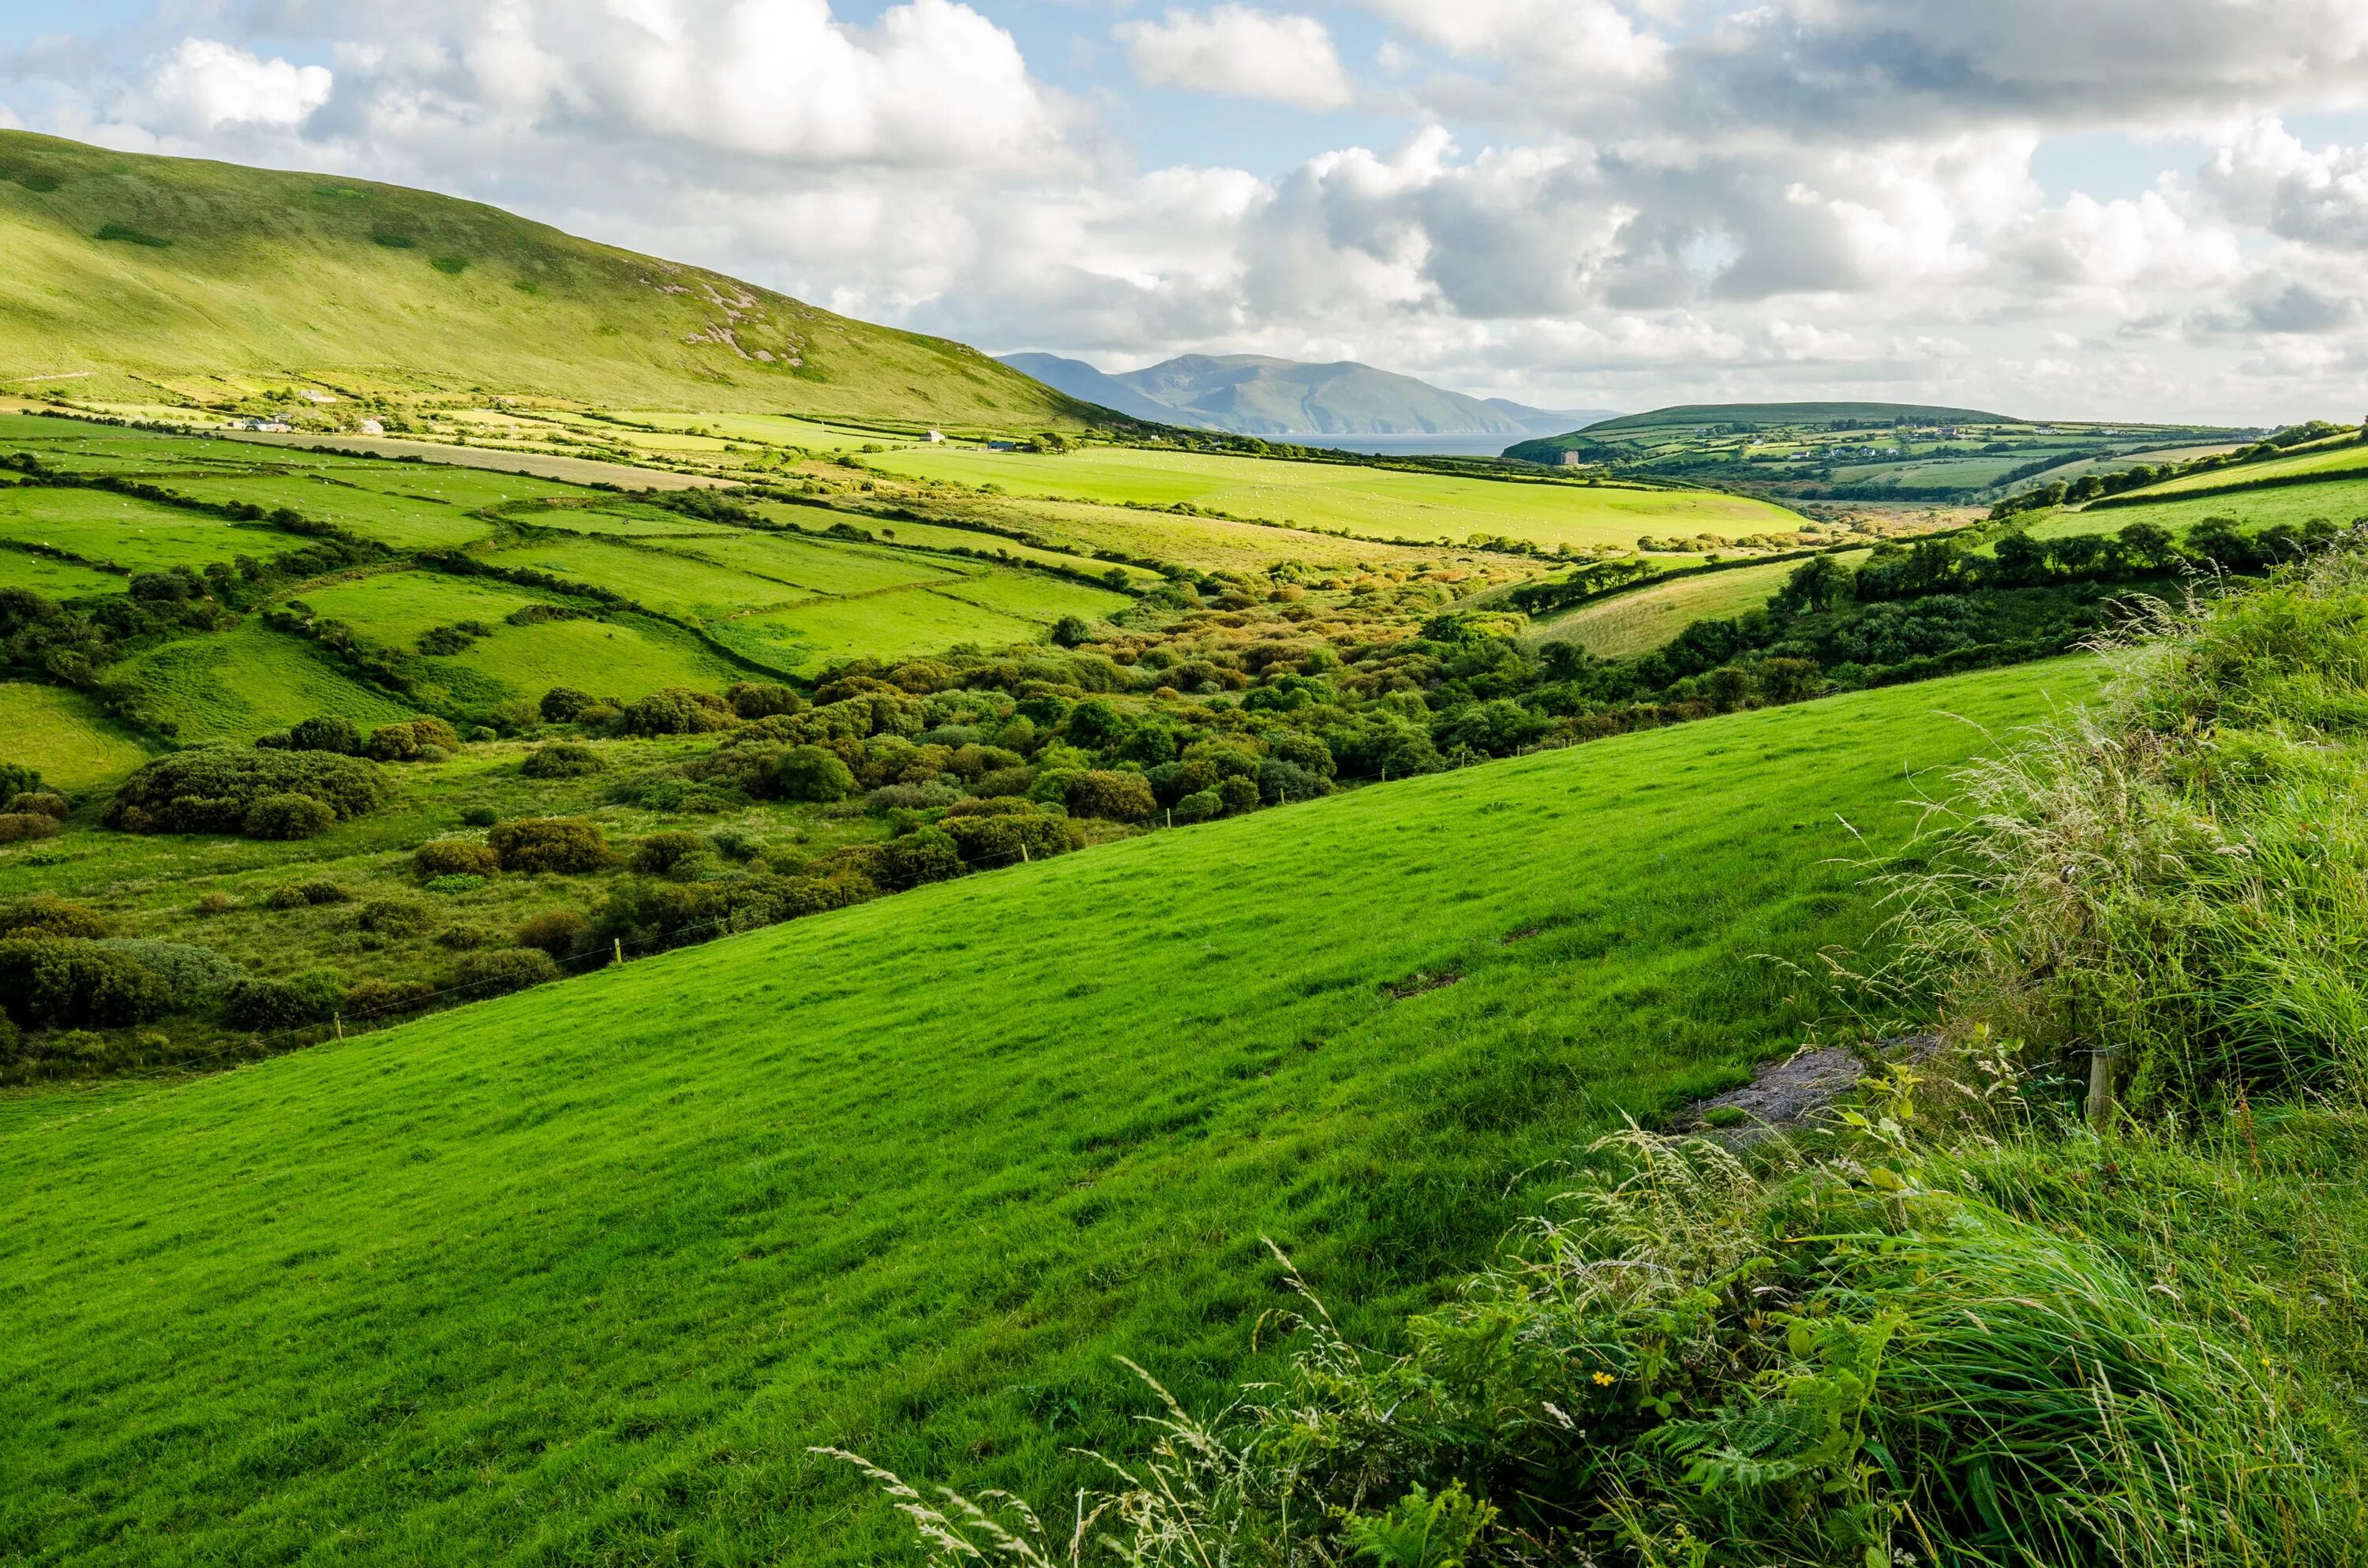 Село зелени. Центральная низменность Ирландия. Кейдские поля Ирландия. Зеленые холмы Ирландии. Равнины Ирландии.